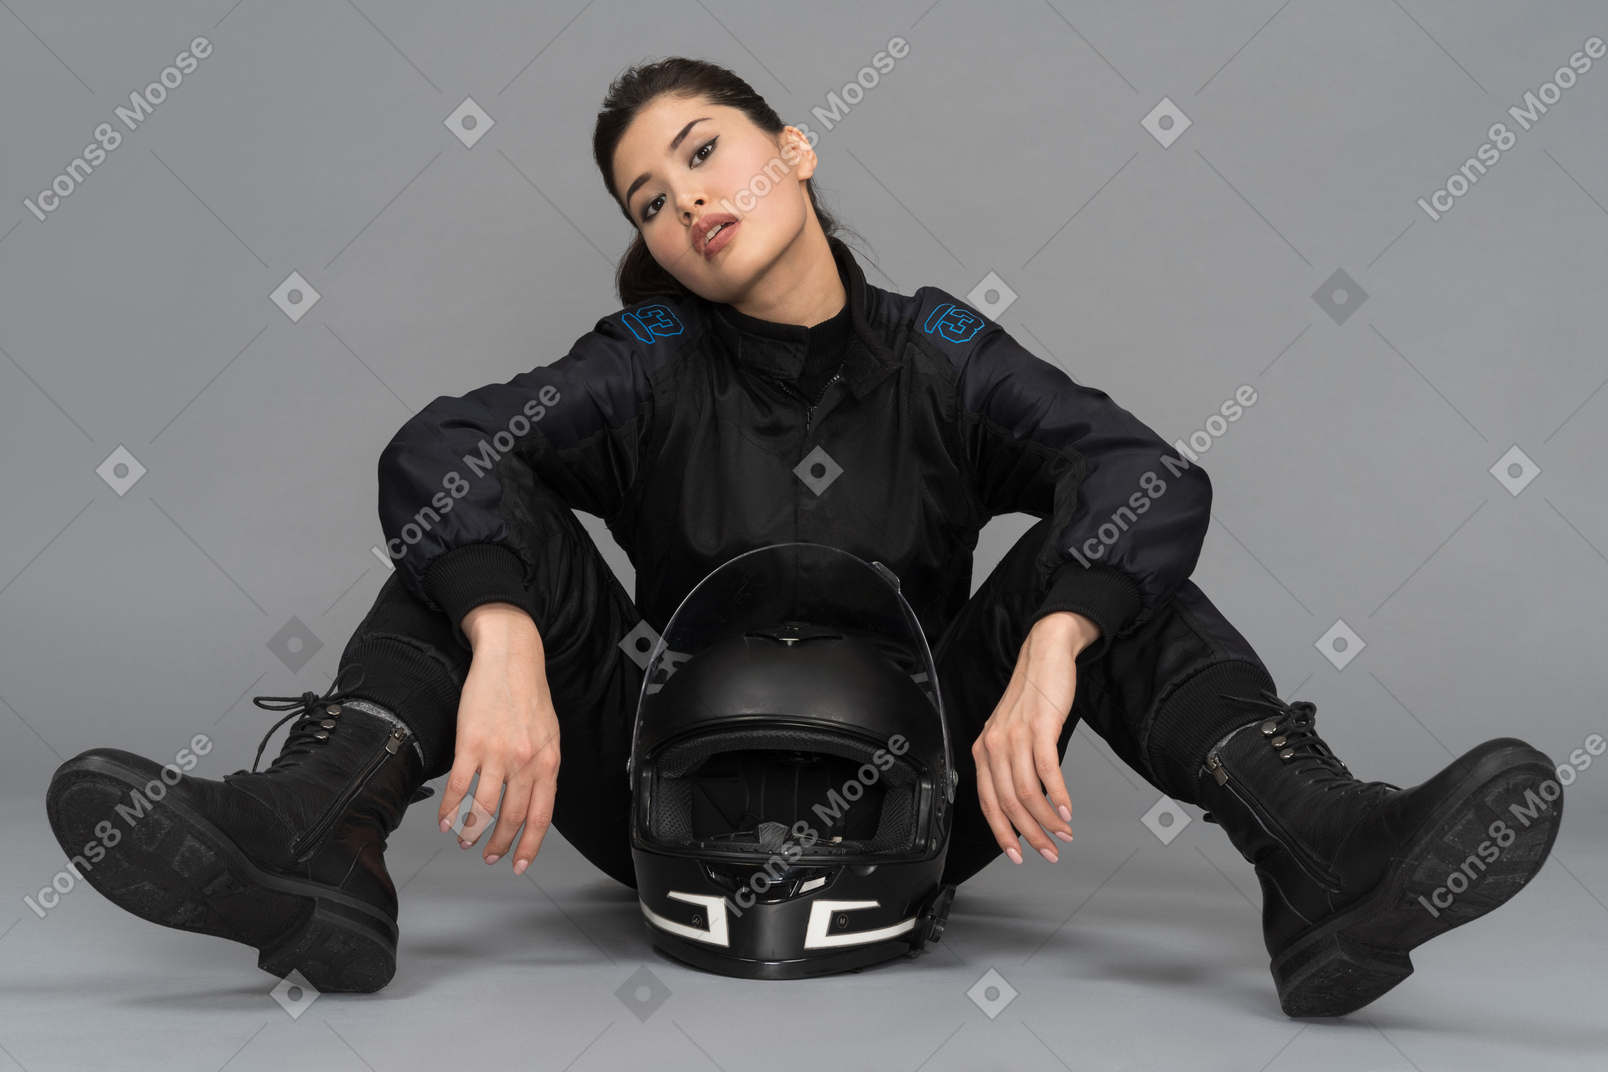 Una joven segura de sí misma sentada con un casco entre las piernas